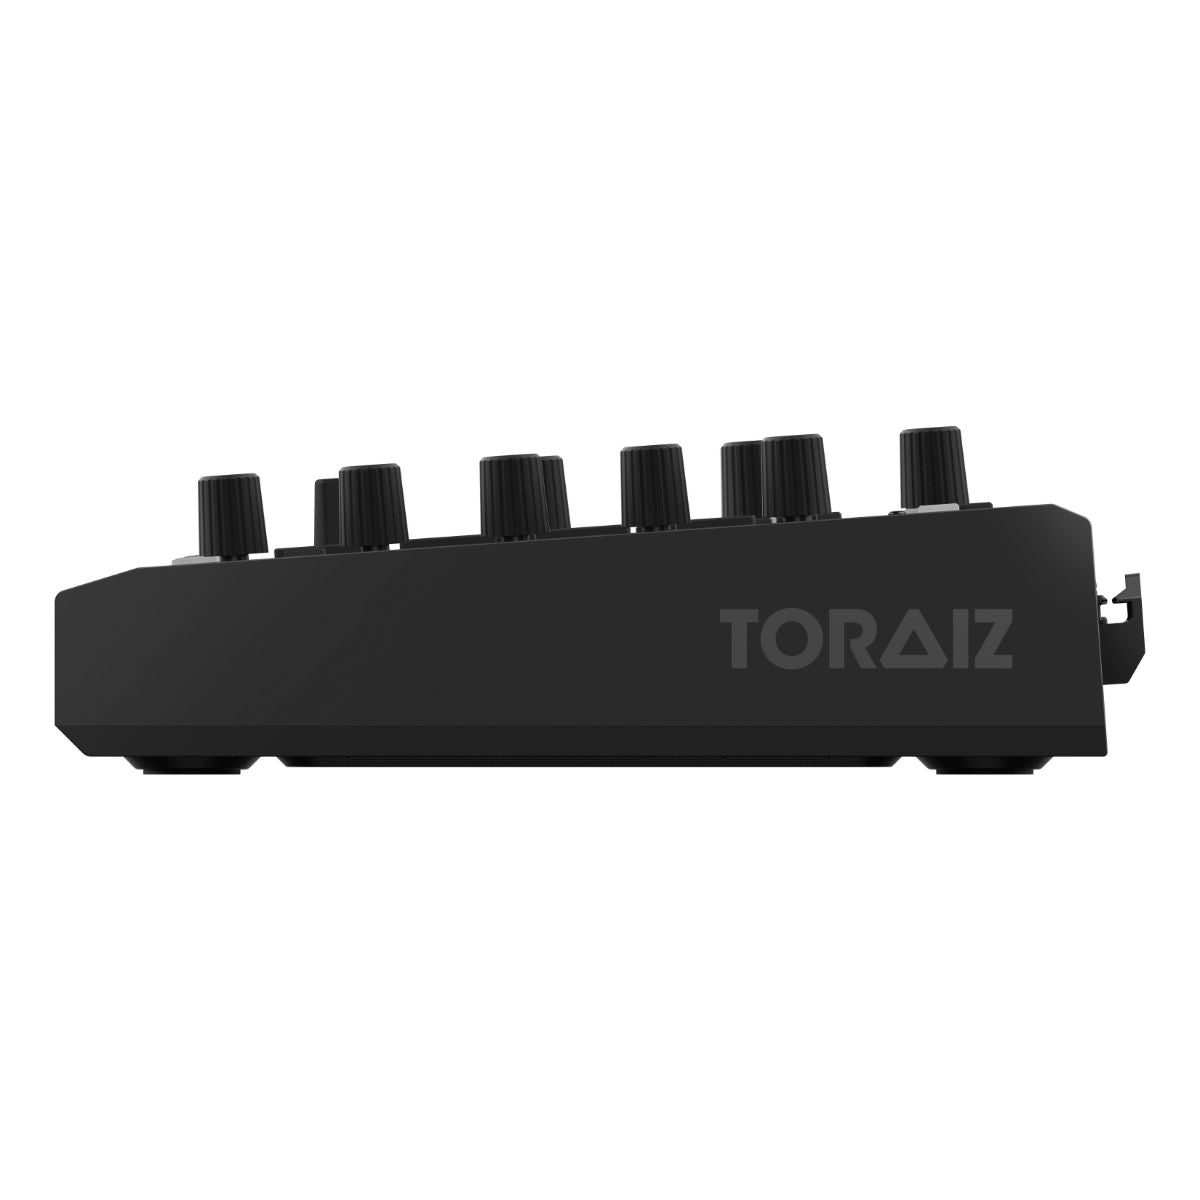 TORAIZ SQUID Multitrack Sequencer